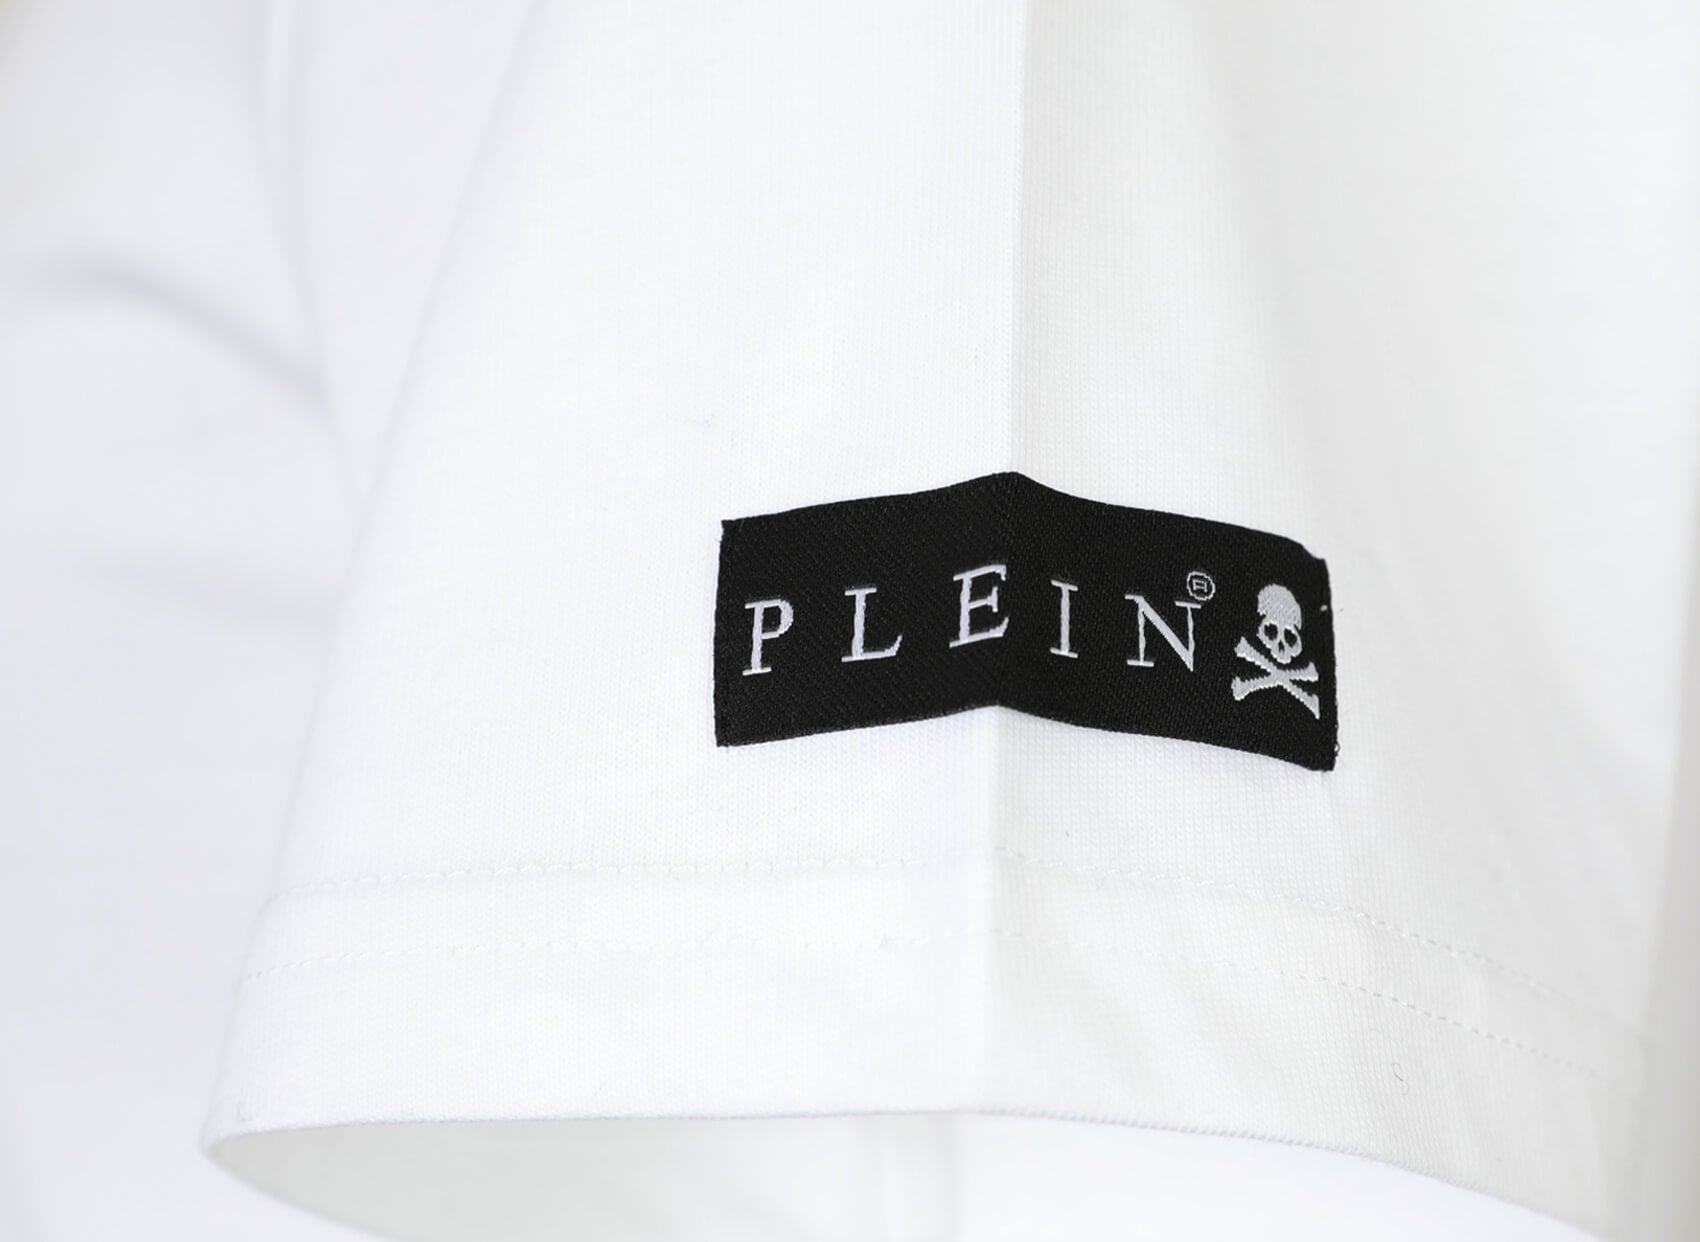 PHILIPP PLEIN T-SHIRT-Libas Trendy Fashion Store